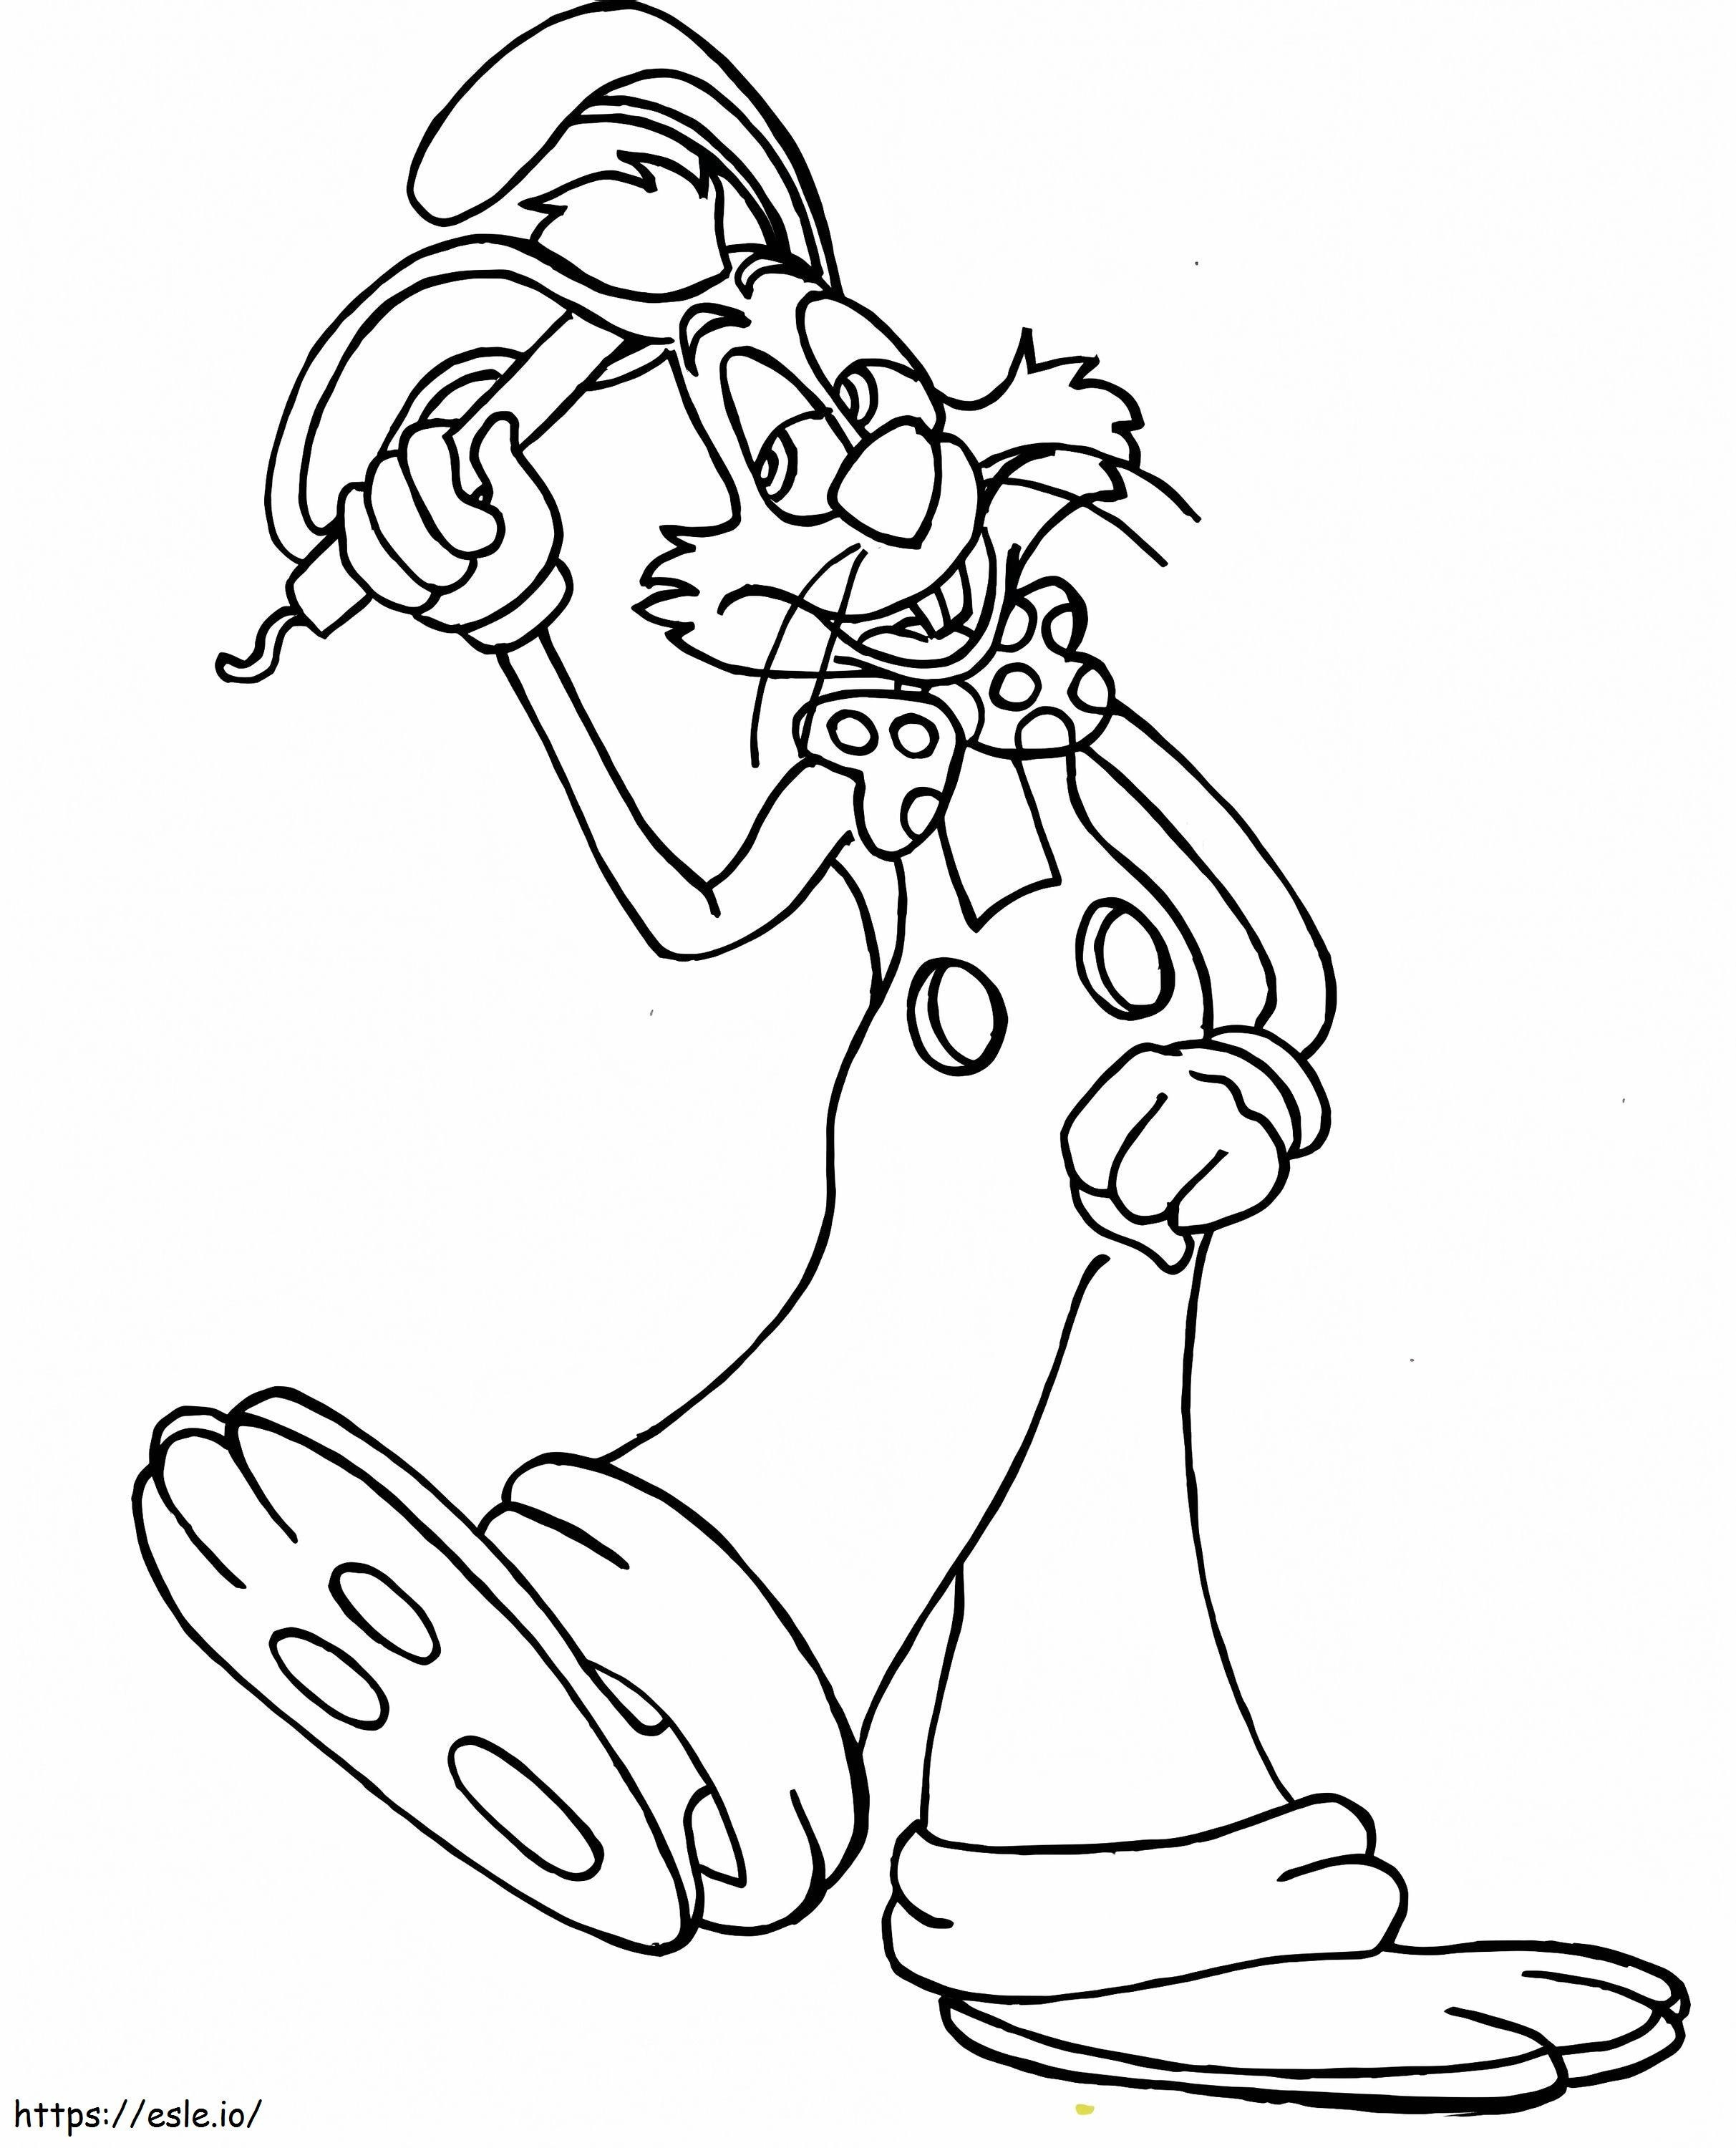 Coloriage Roger Rabbit gratuit à imprimer dessin